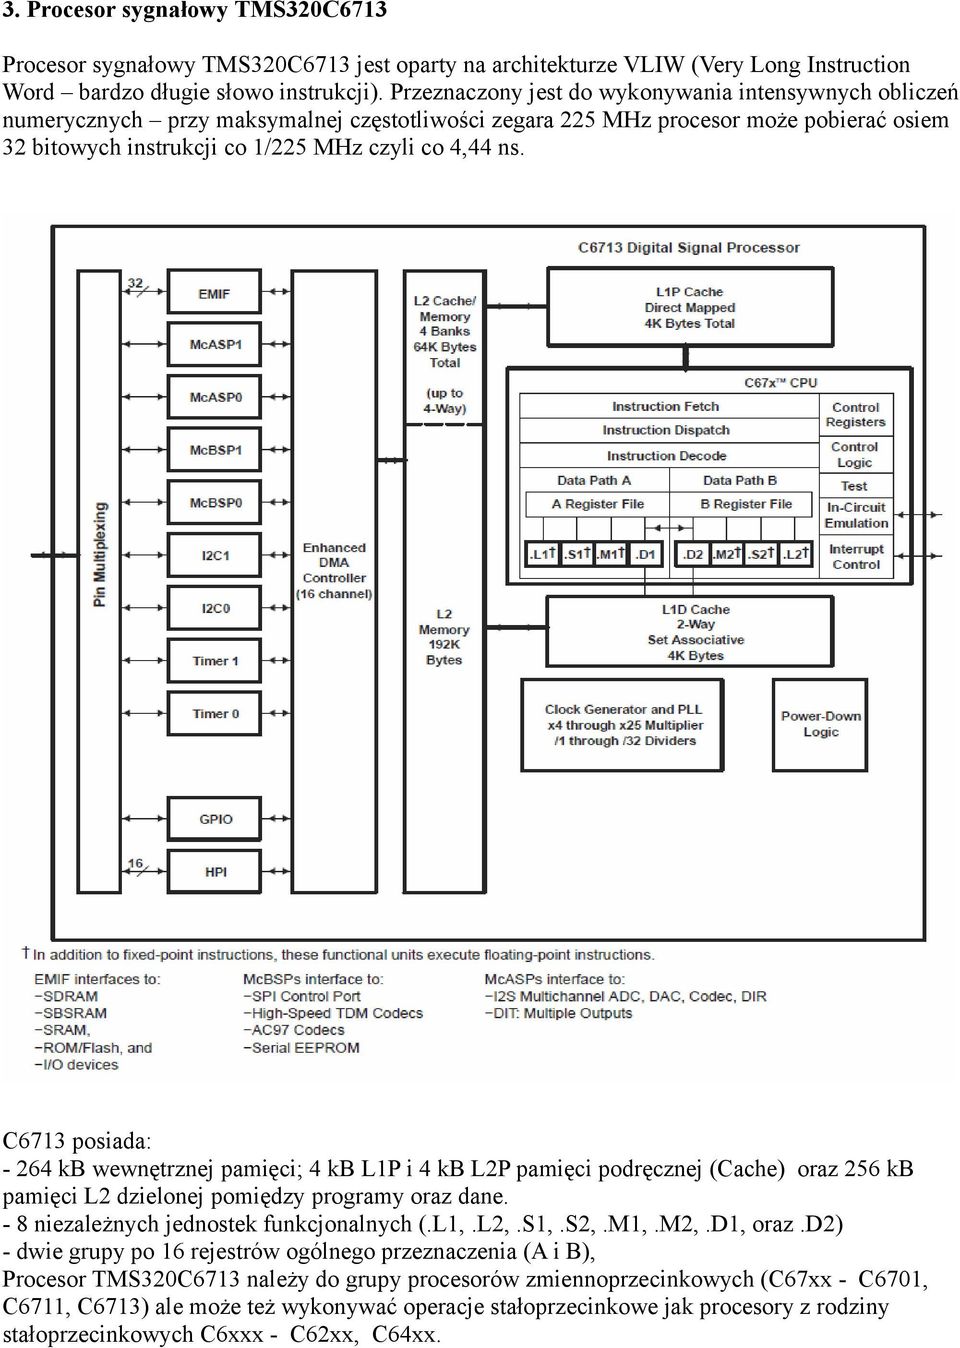 C6713 posiada: - 264 kb wewnętrznej pamięci; 4 kb L1P i 4 kb L2P pamięci podręcznej (Cache) oraz 256 kb pamięci L2 dzielonej pomiędzy programy oraz dane. - 8 niezależnych jednostek funkcjonalnych (.